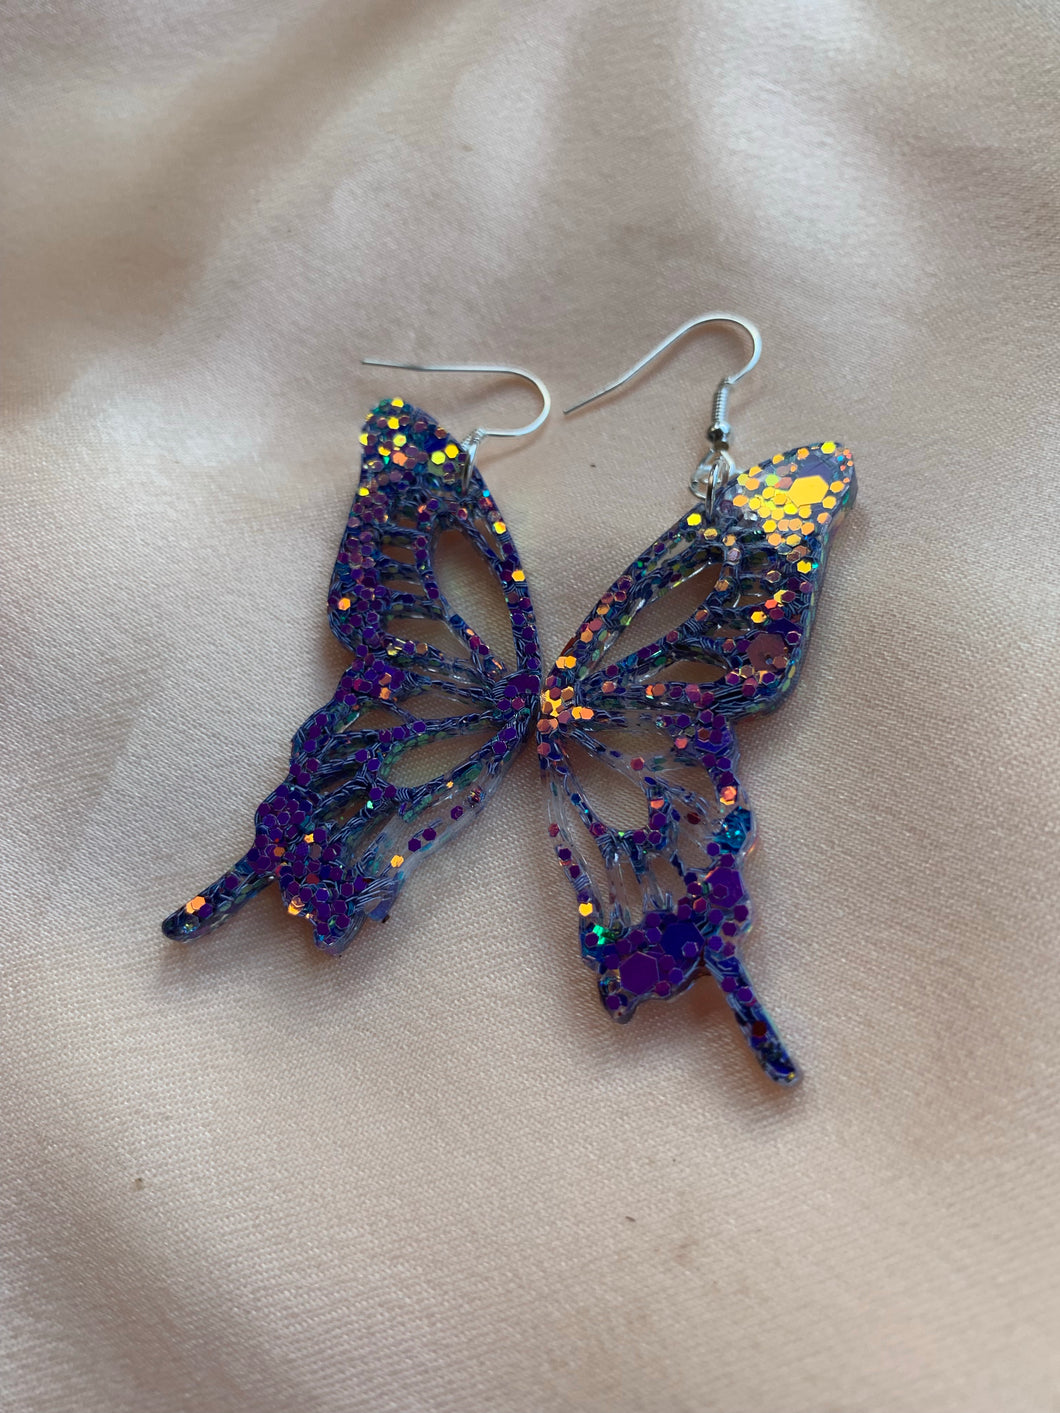 Blue/purple iridescent butterfly wing earrings